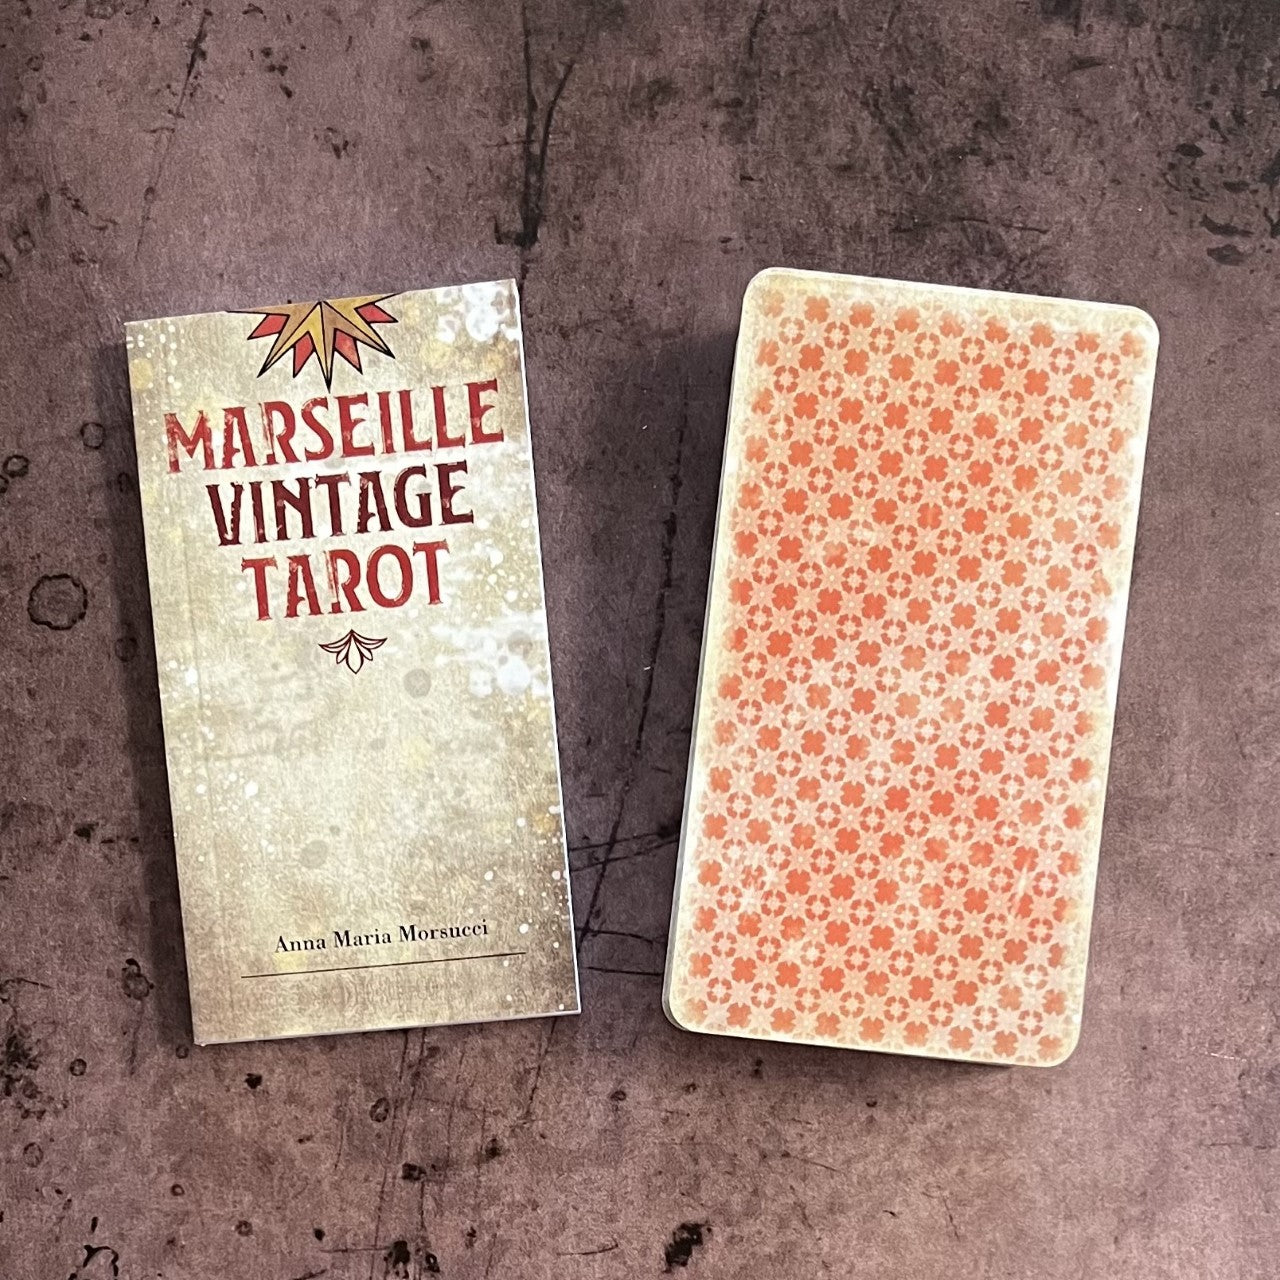 Le Tarot de Marseille - Anna Maria MORSUCCI